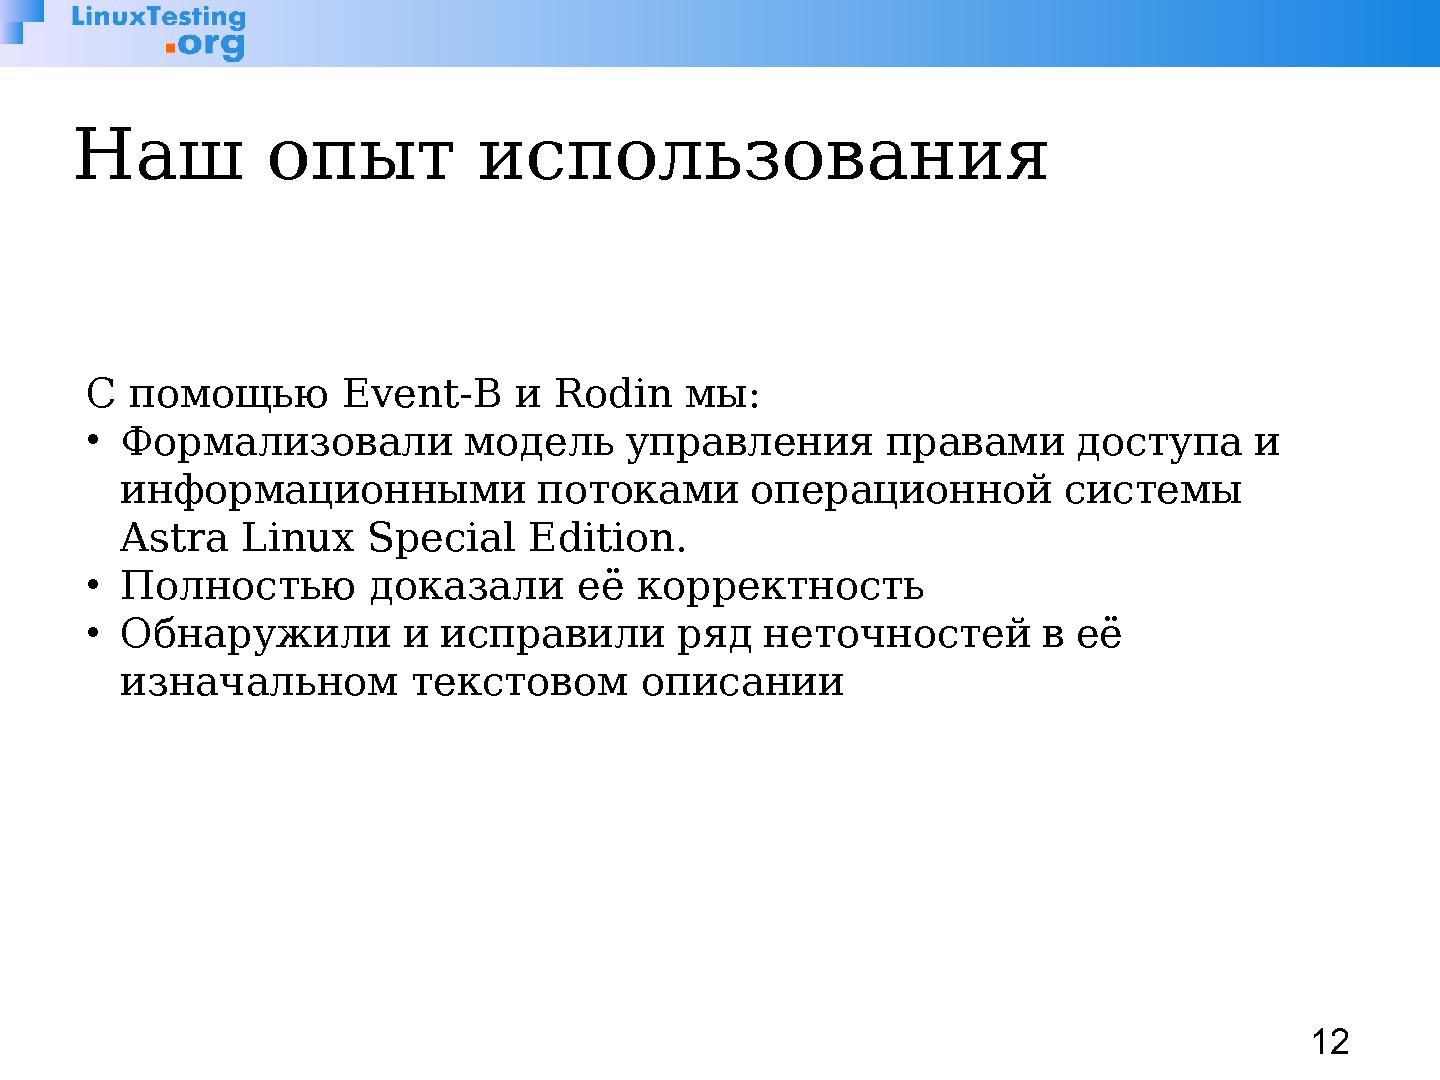 Файл:Rodin — платформа для разработки и верификации моделей на Event-B (Илья Щепетков, OSSDEVCONF-2014).pdf